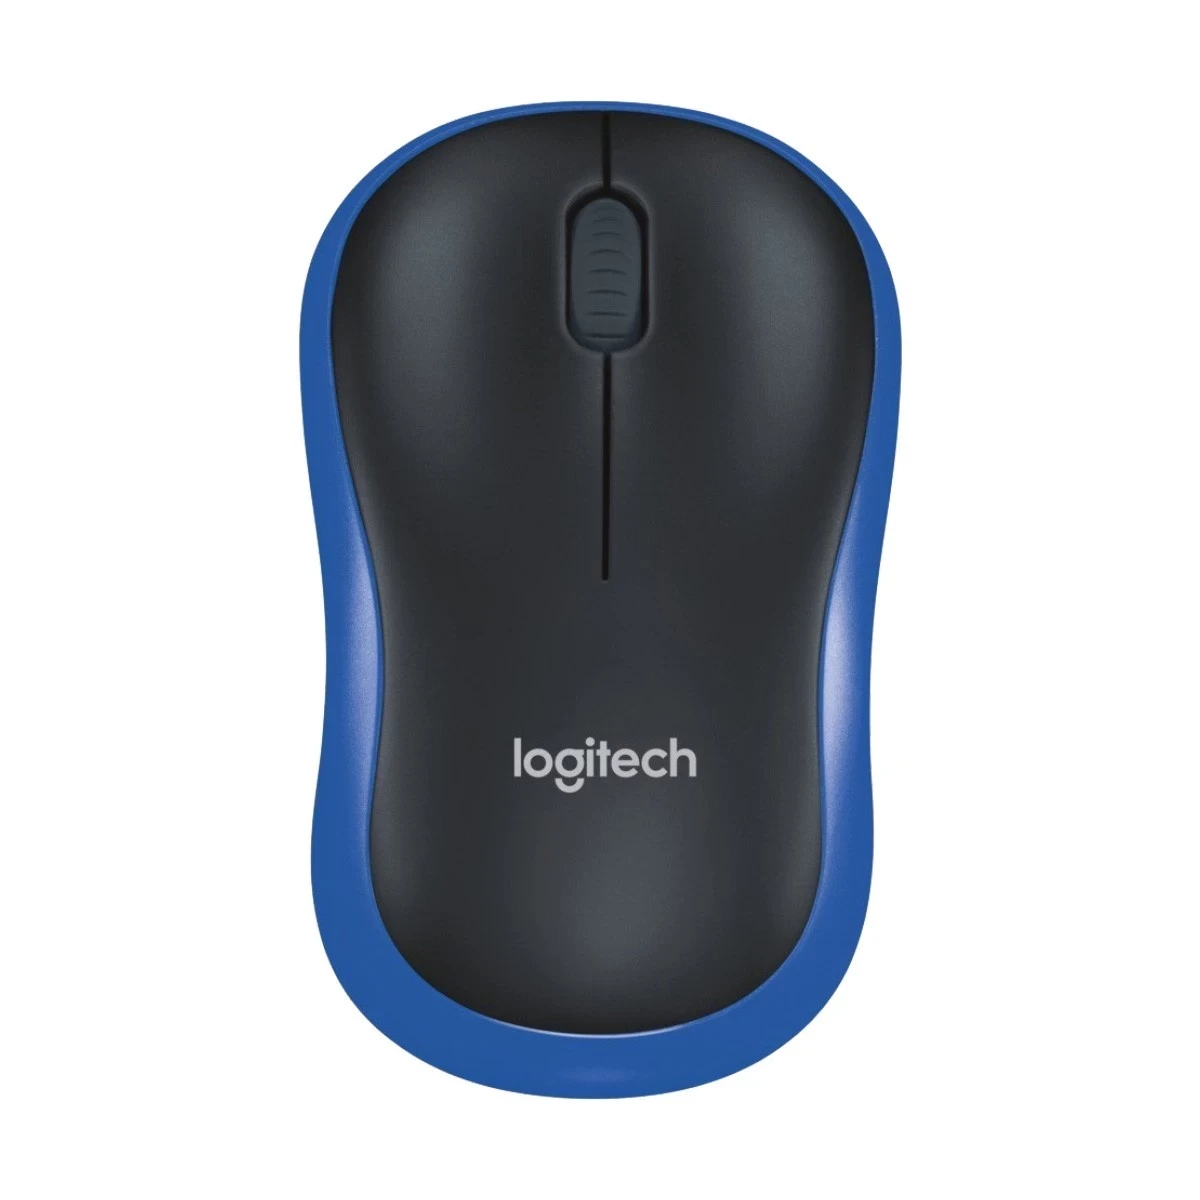 Logitech M185 Wireless Mouse – Blue Color